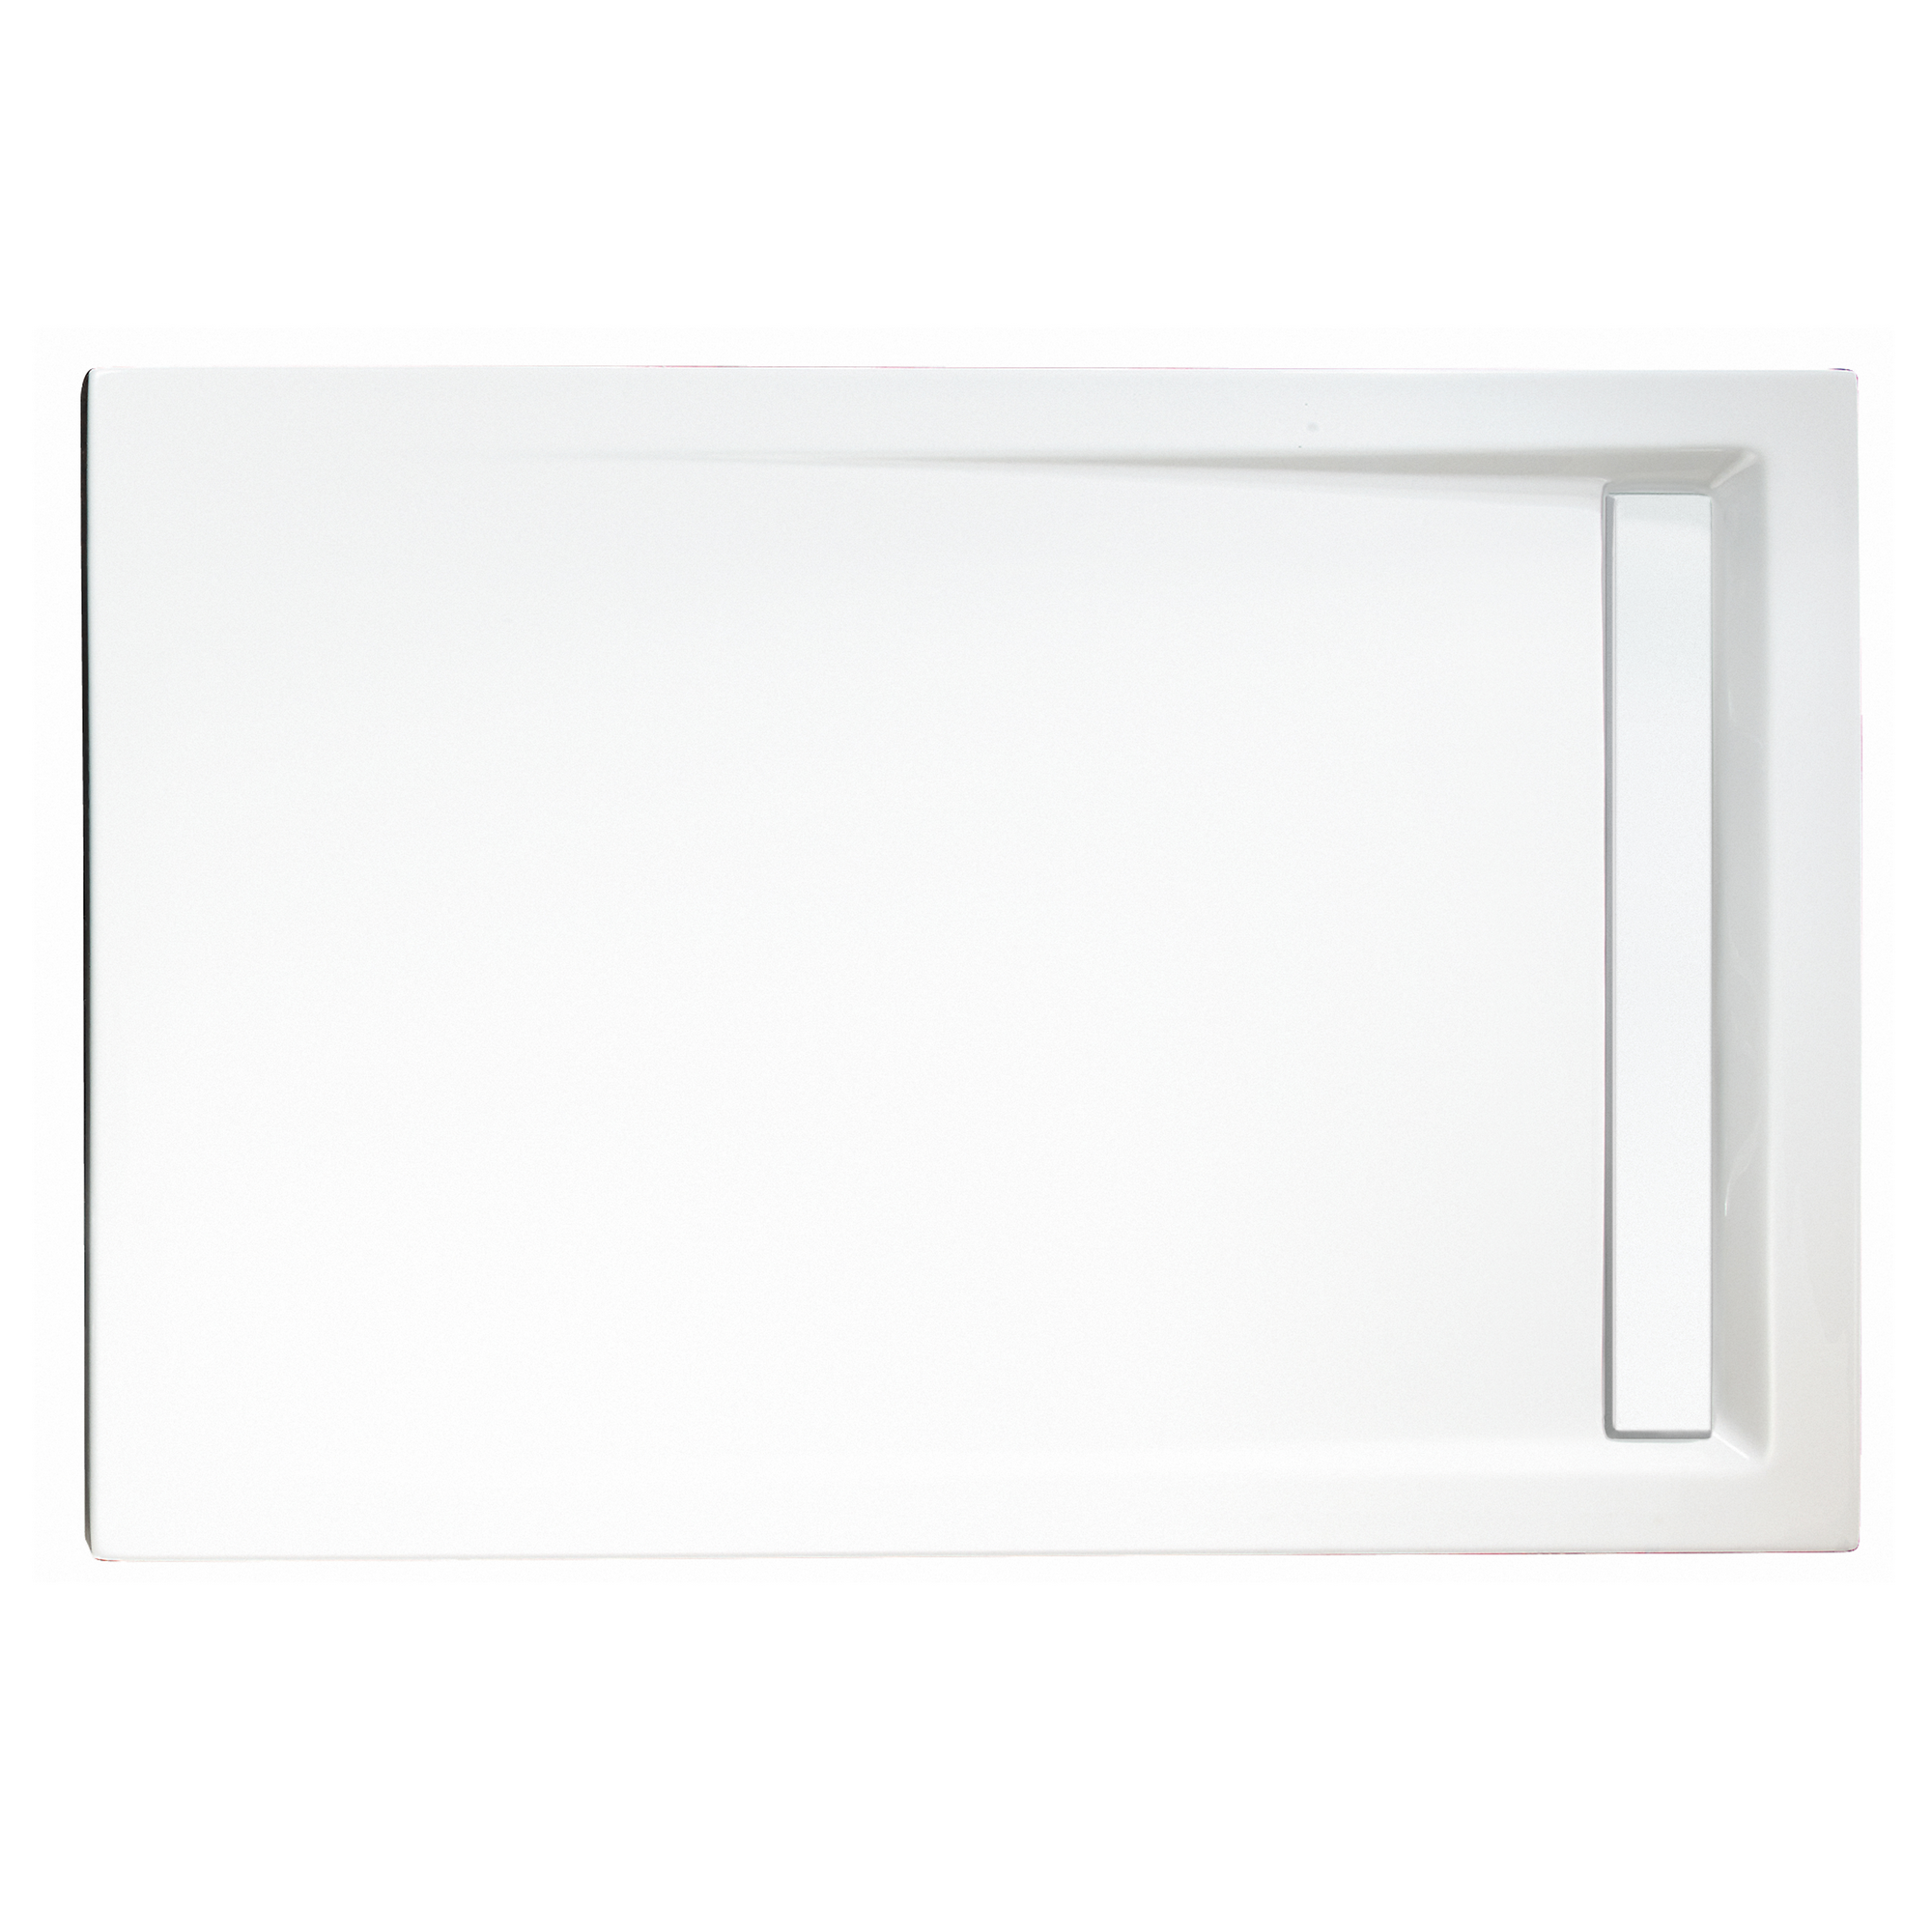 Duschwanne, Sanitäracryl, mit Rinne, weiß, rechteckig, 100 x 90 x 2,5 cm + product picture